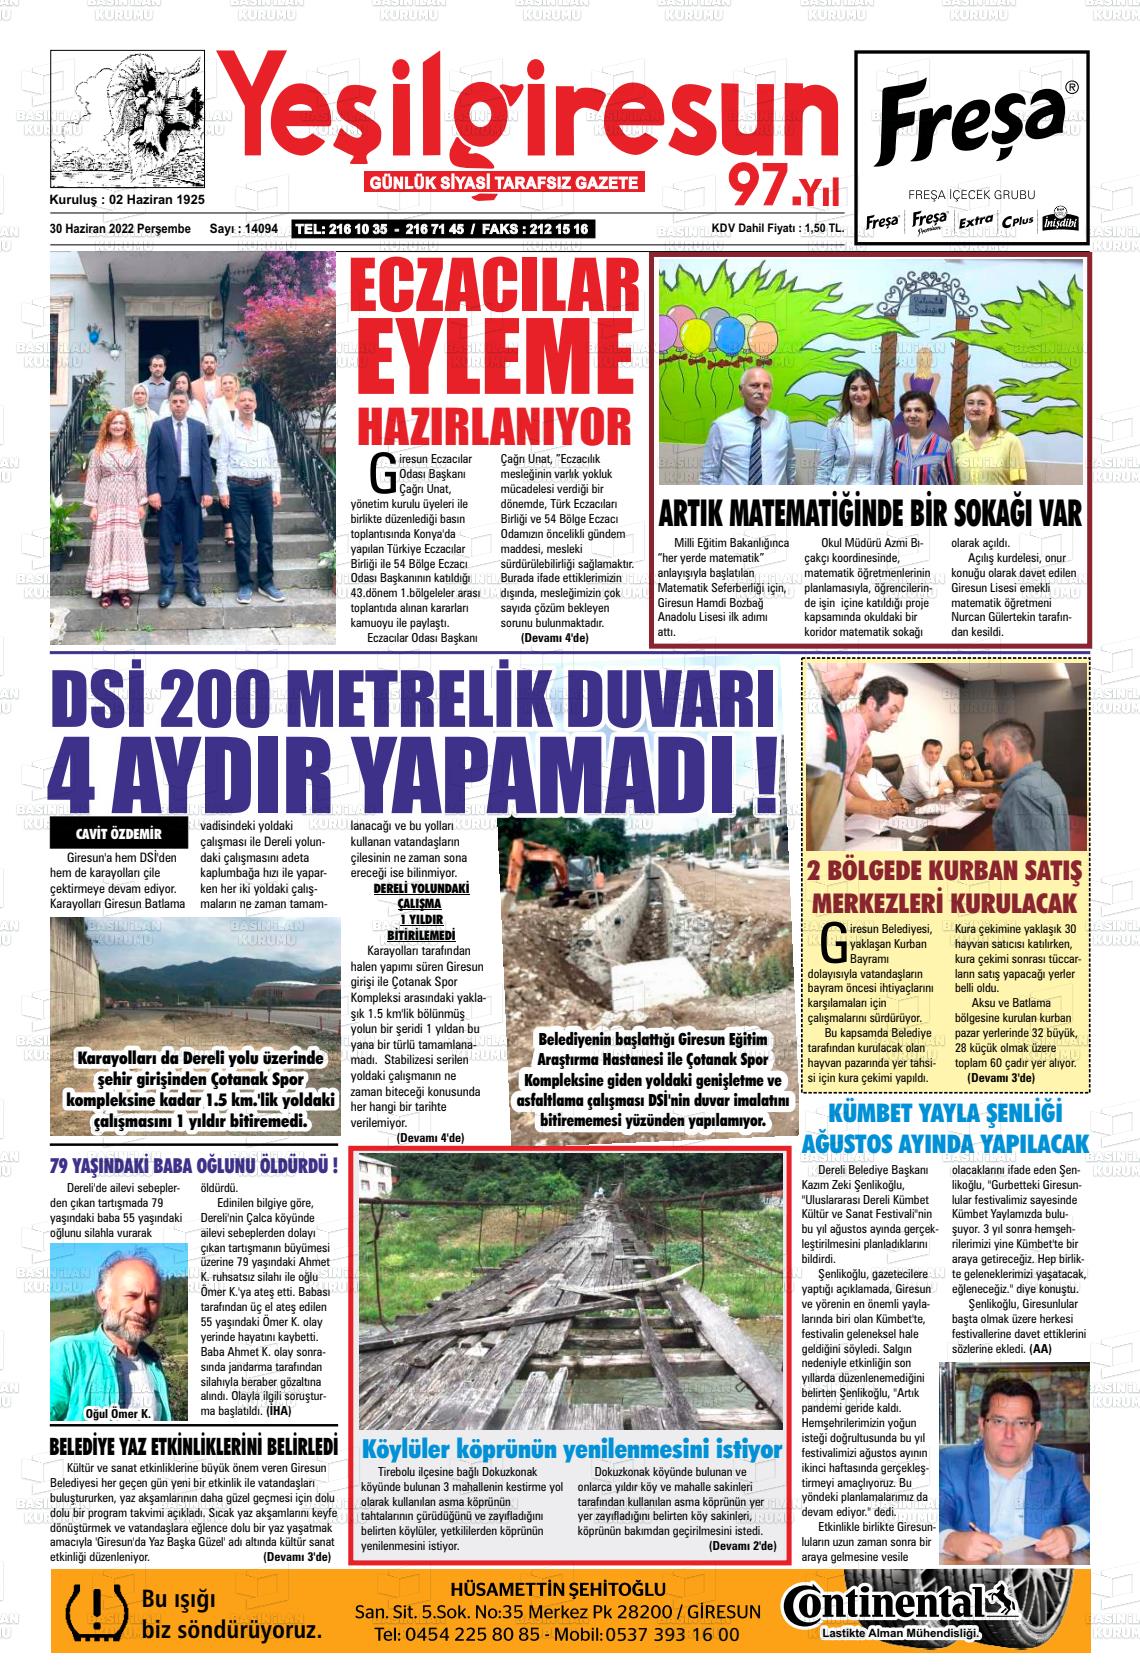 30 Haziran 2022 Yeşil Giresun Gazete Manşeti